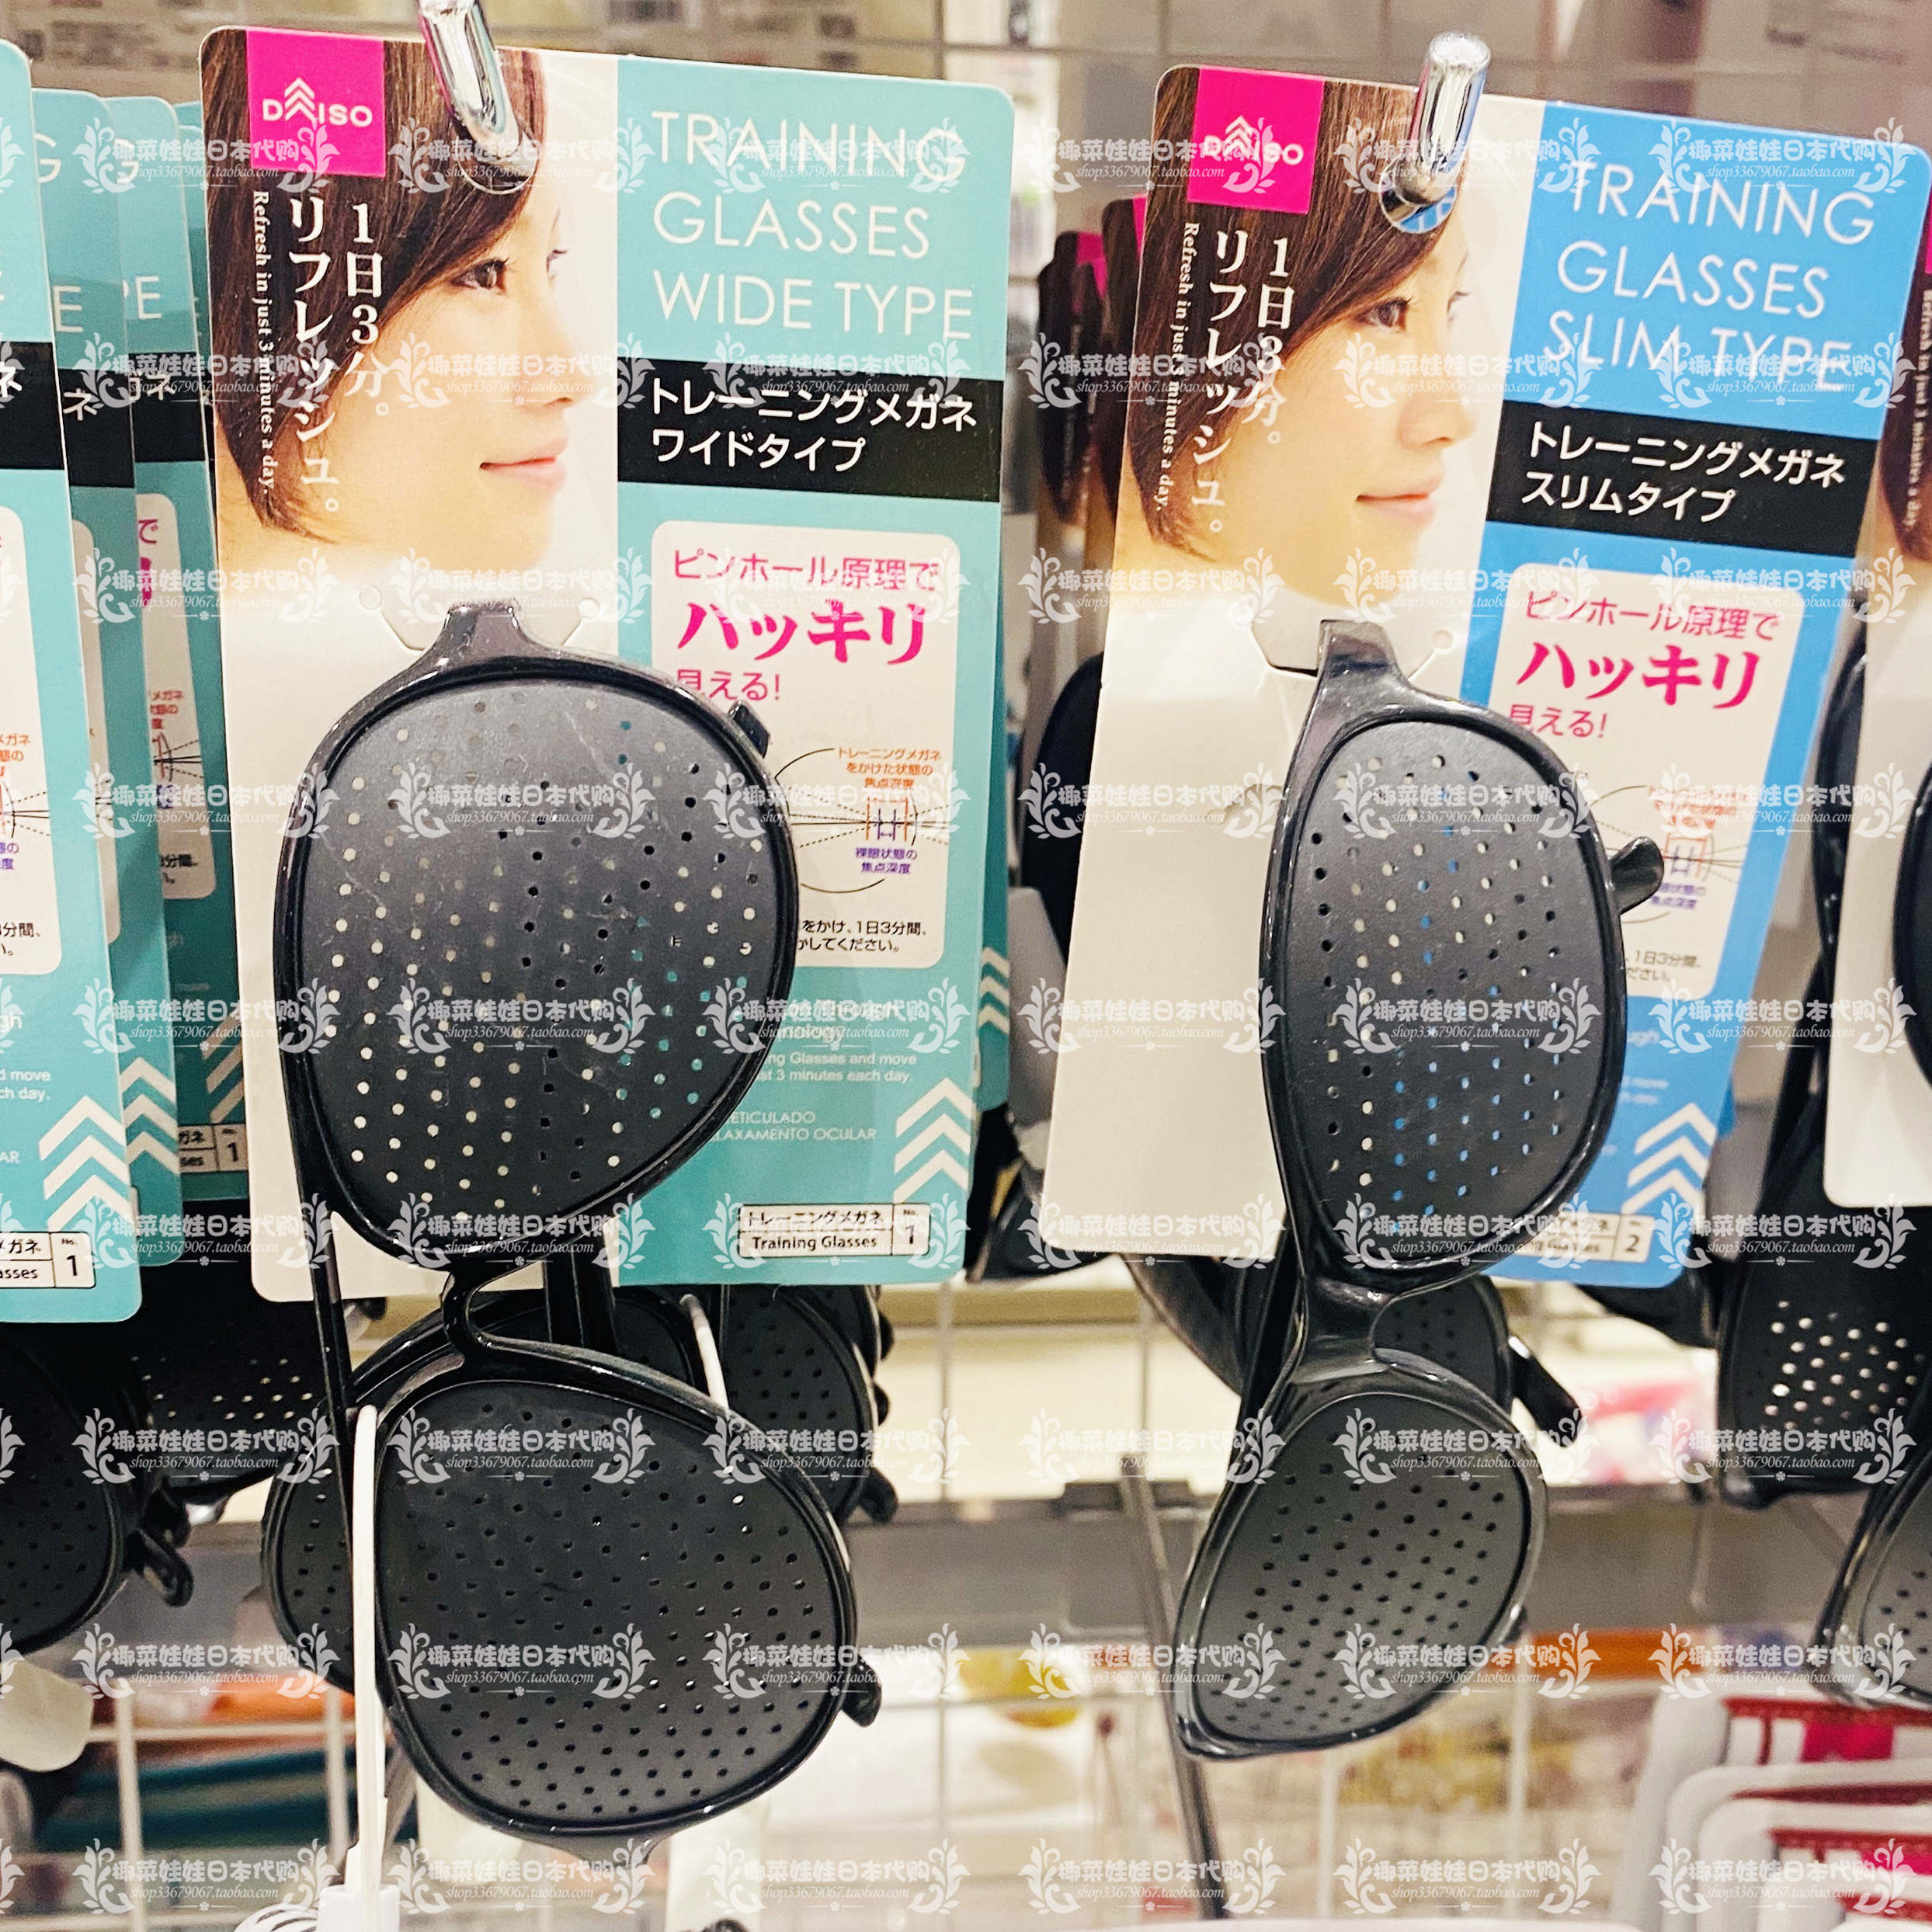 日本大创Daiso小孔护目镜小孔成像原理黑科技缓解视力疲劳训练眼